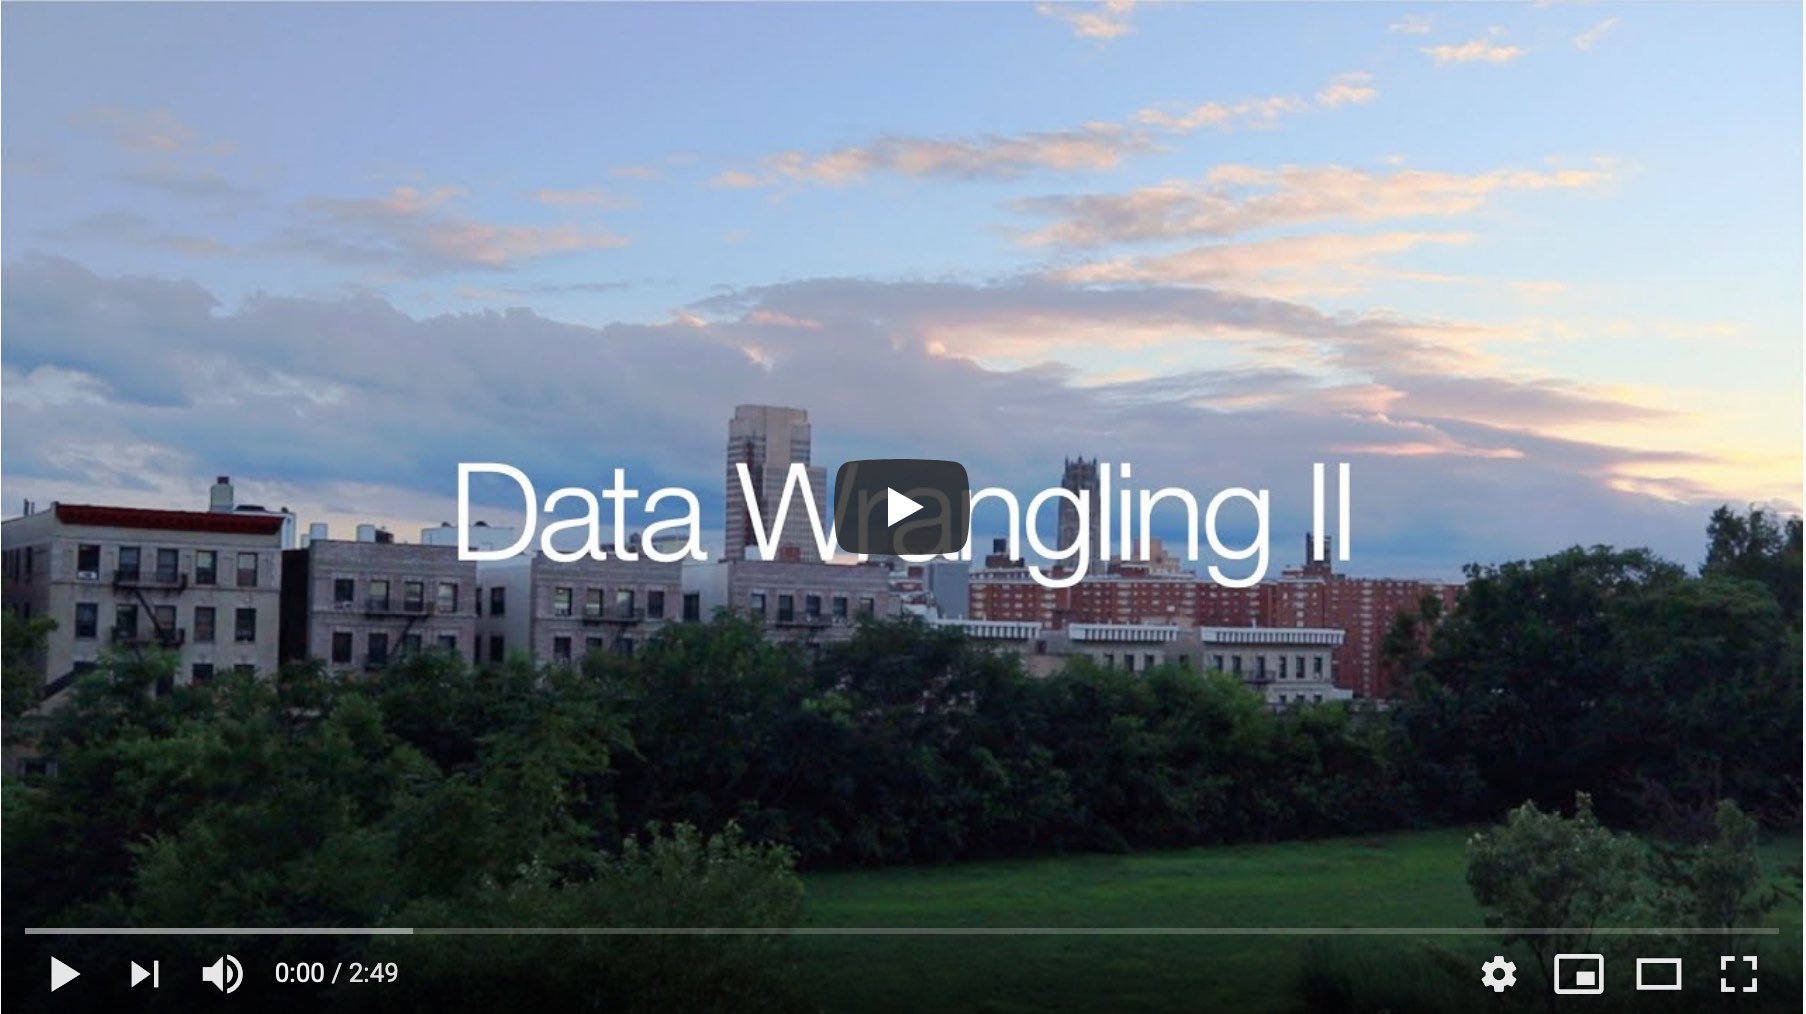 Data Wrangling II